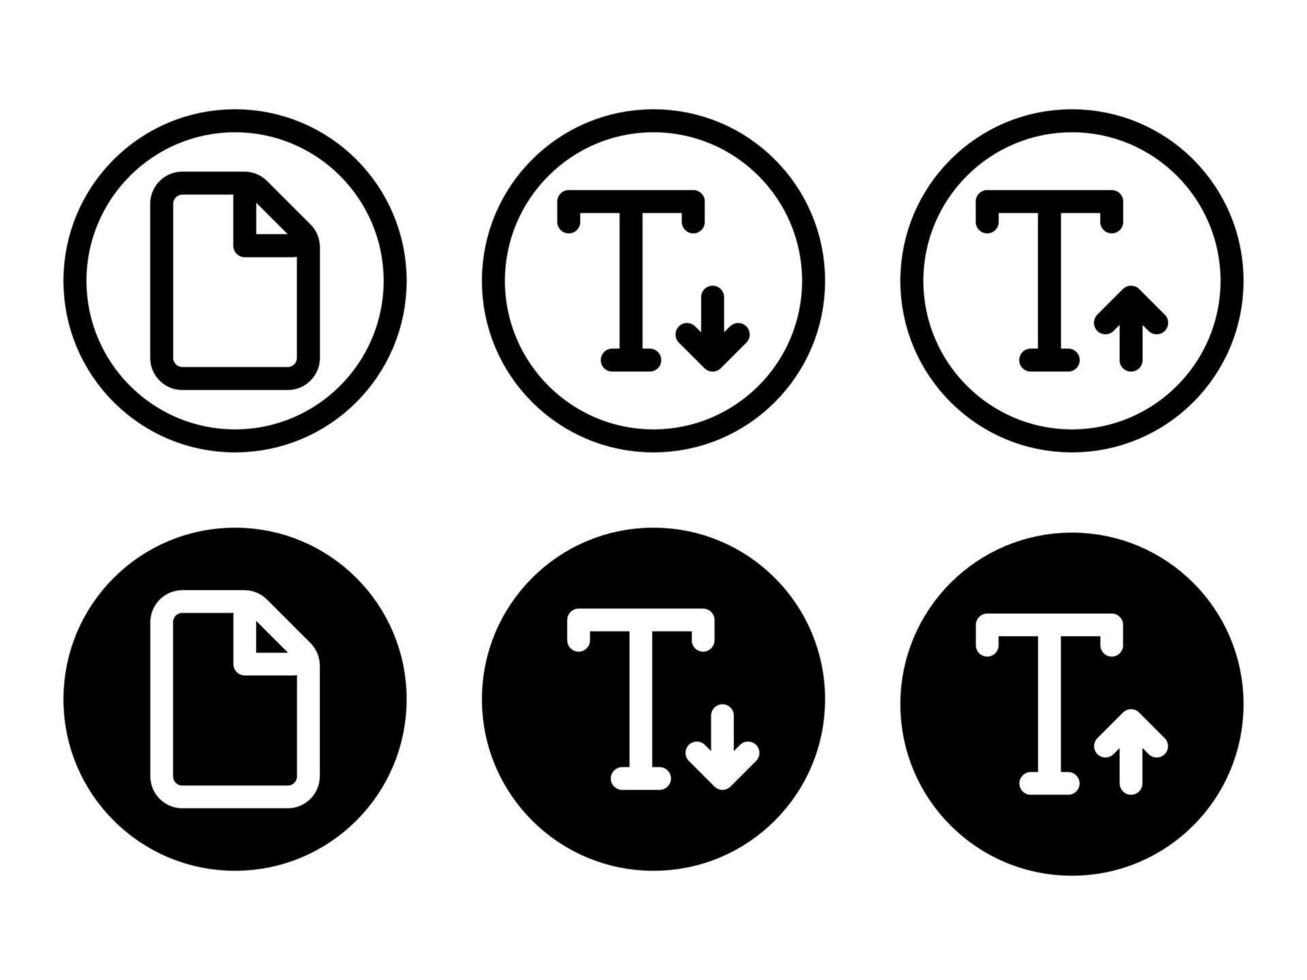 texto para cima e texto para baixo conjunto com ícone de arquivo em ícones de estilo moderno estão localizados em fundos brancos e pretos. o pacote tem seis ícones. vetor